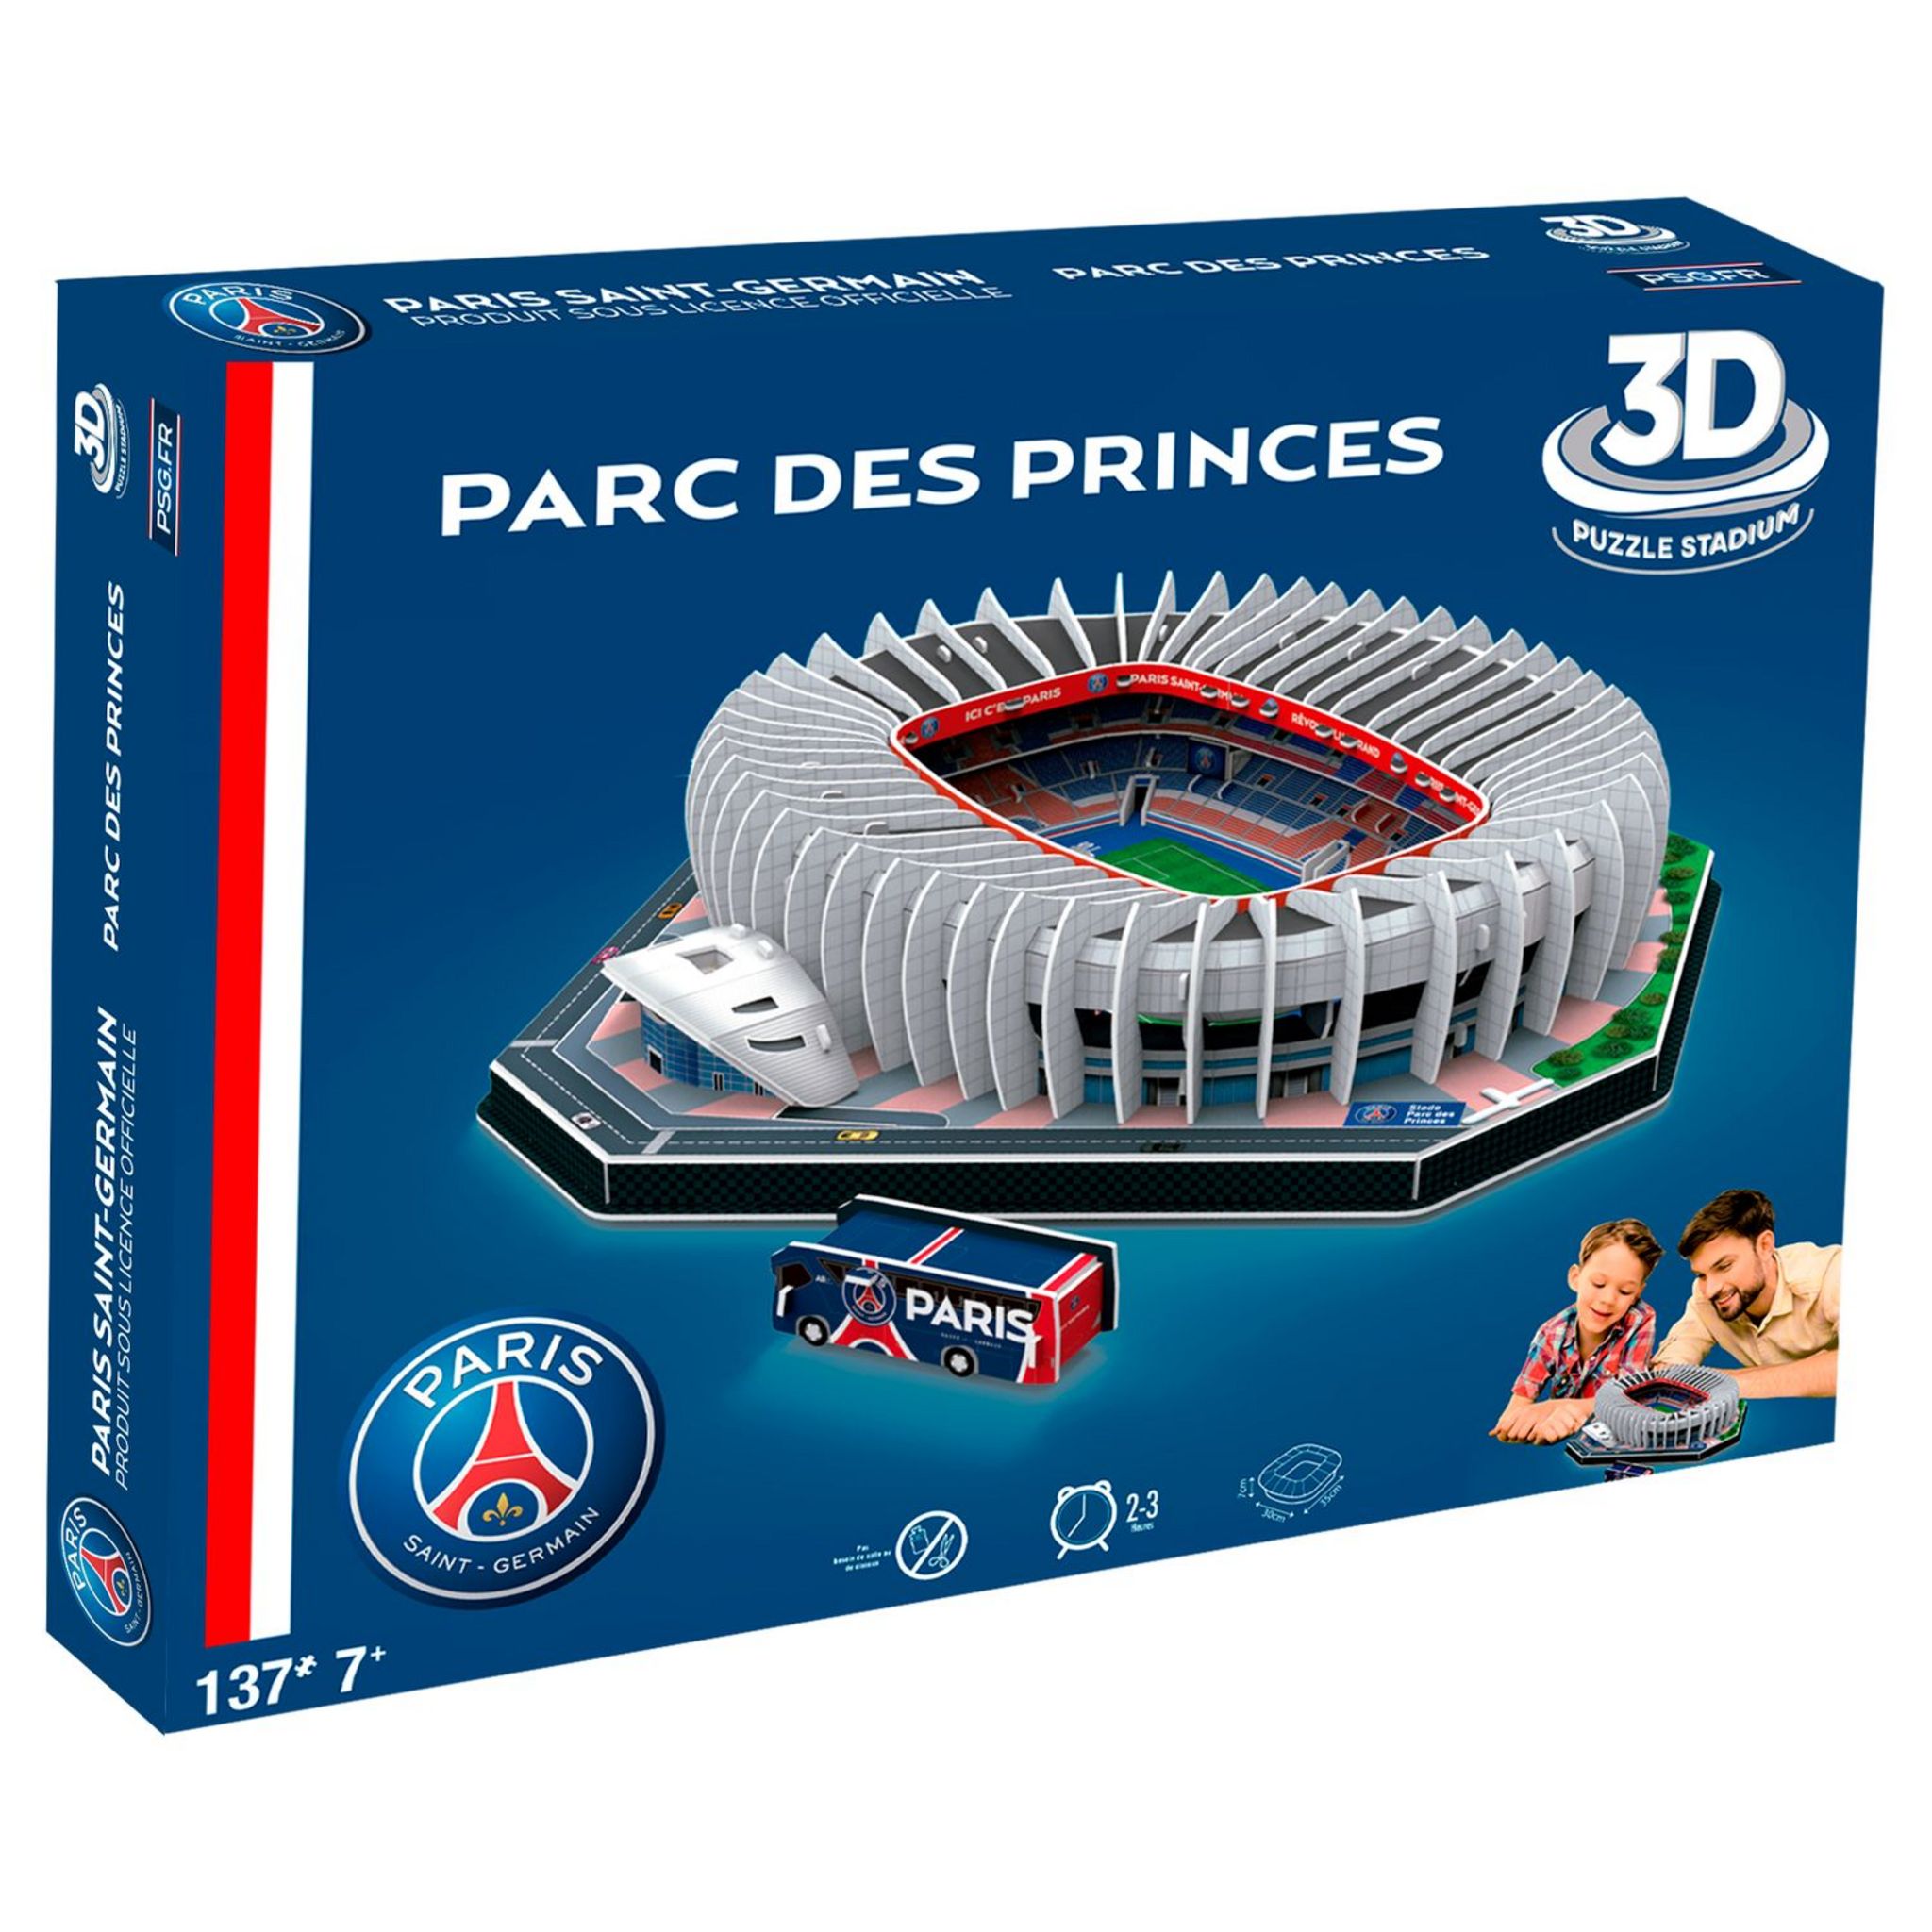 PSG Puzzle Stadium 3D - Parc des Princes